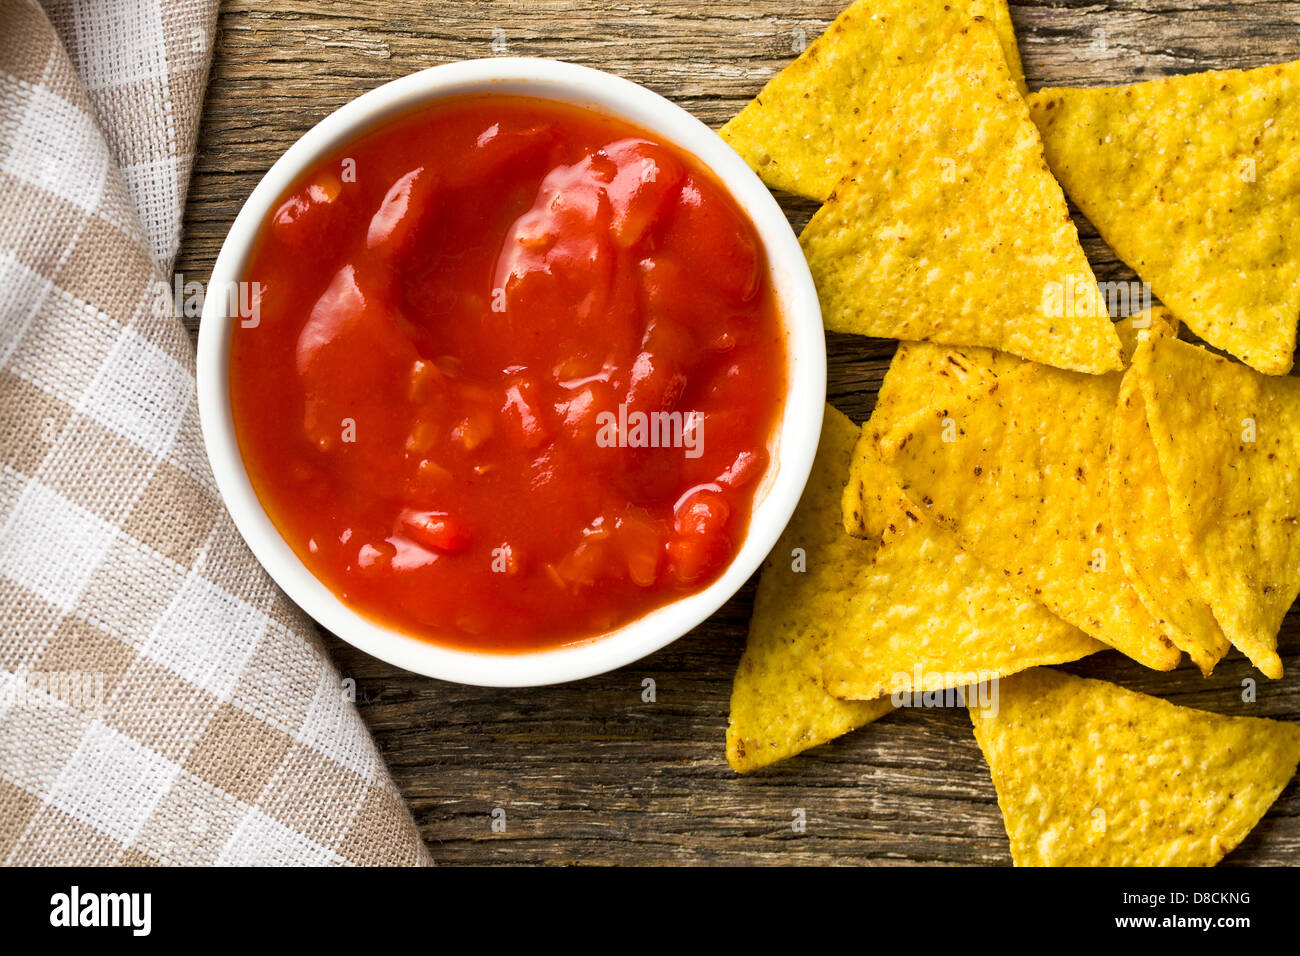 the corn nachos with tomato dip Stock Photo